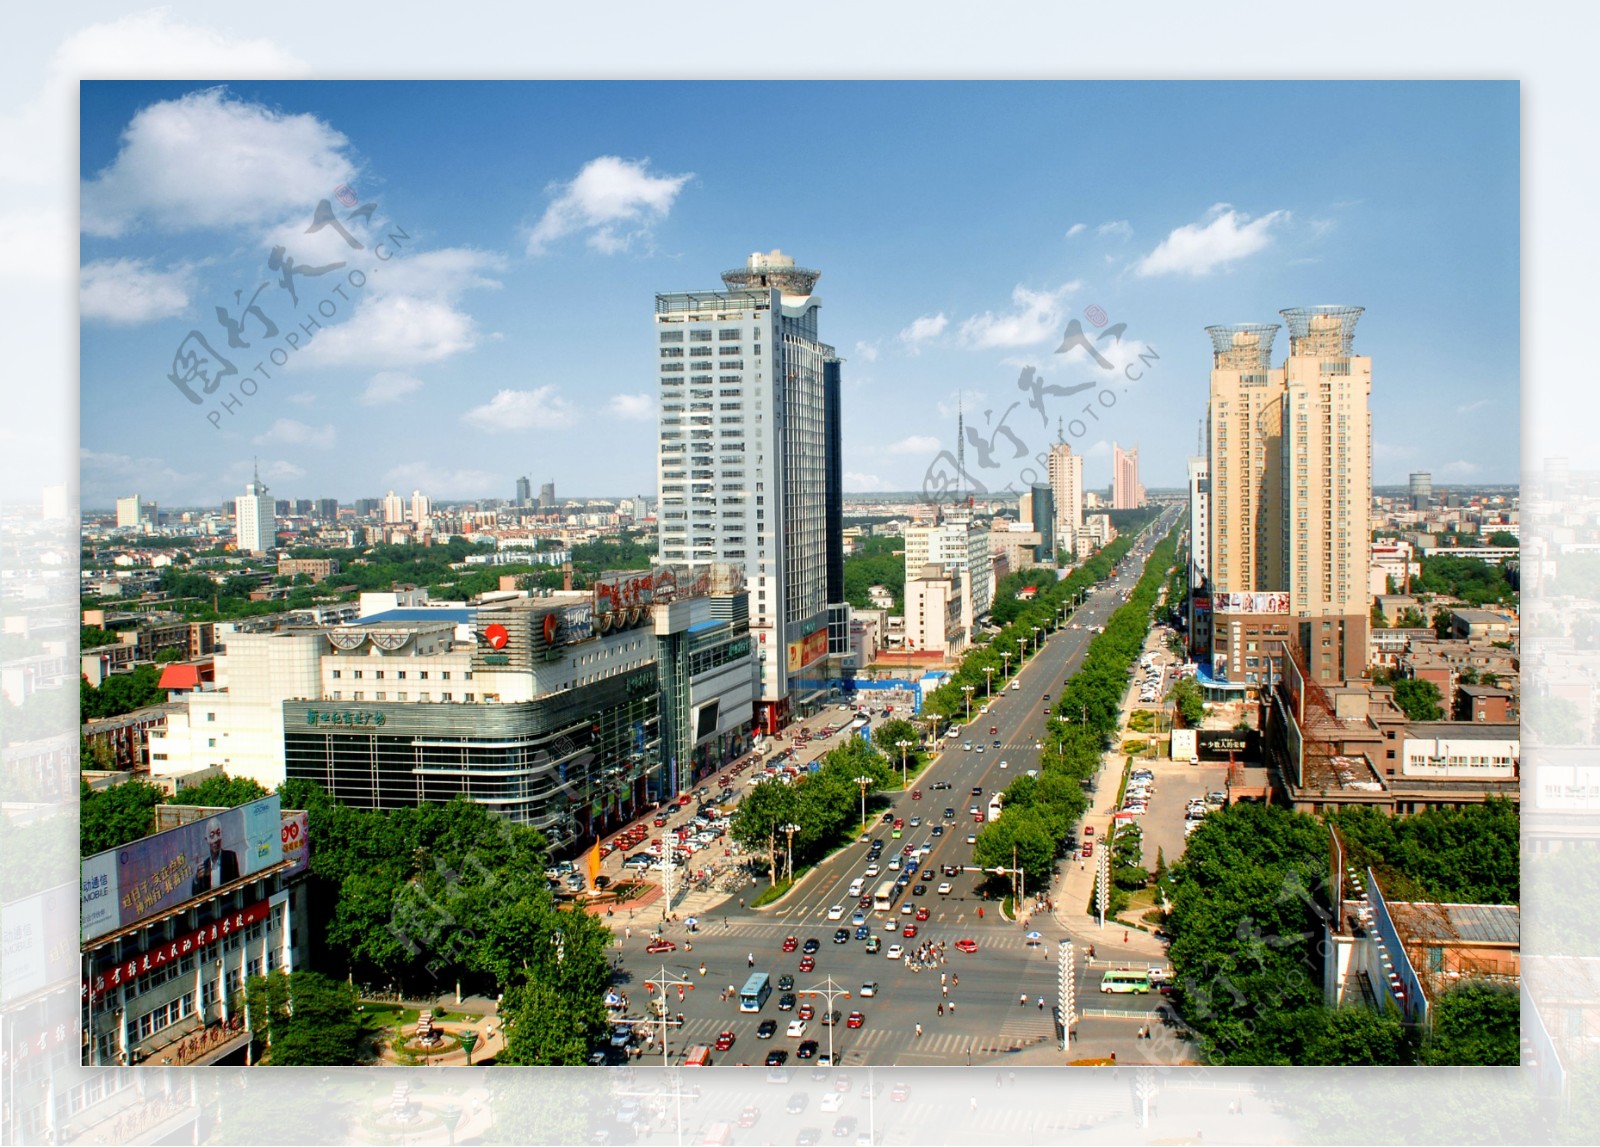 邯郸人民路街景图片